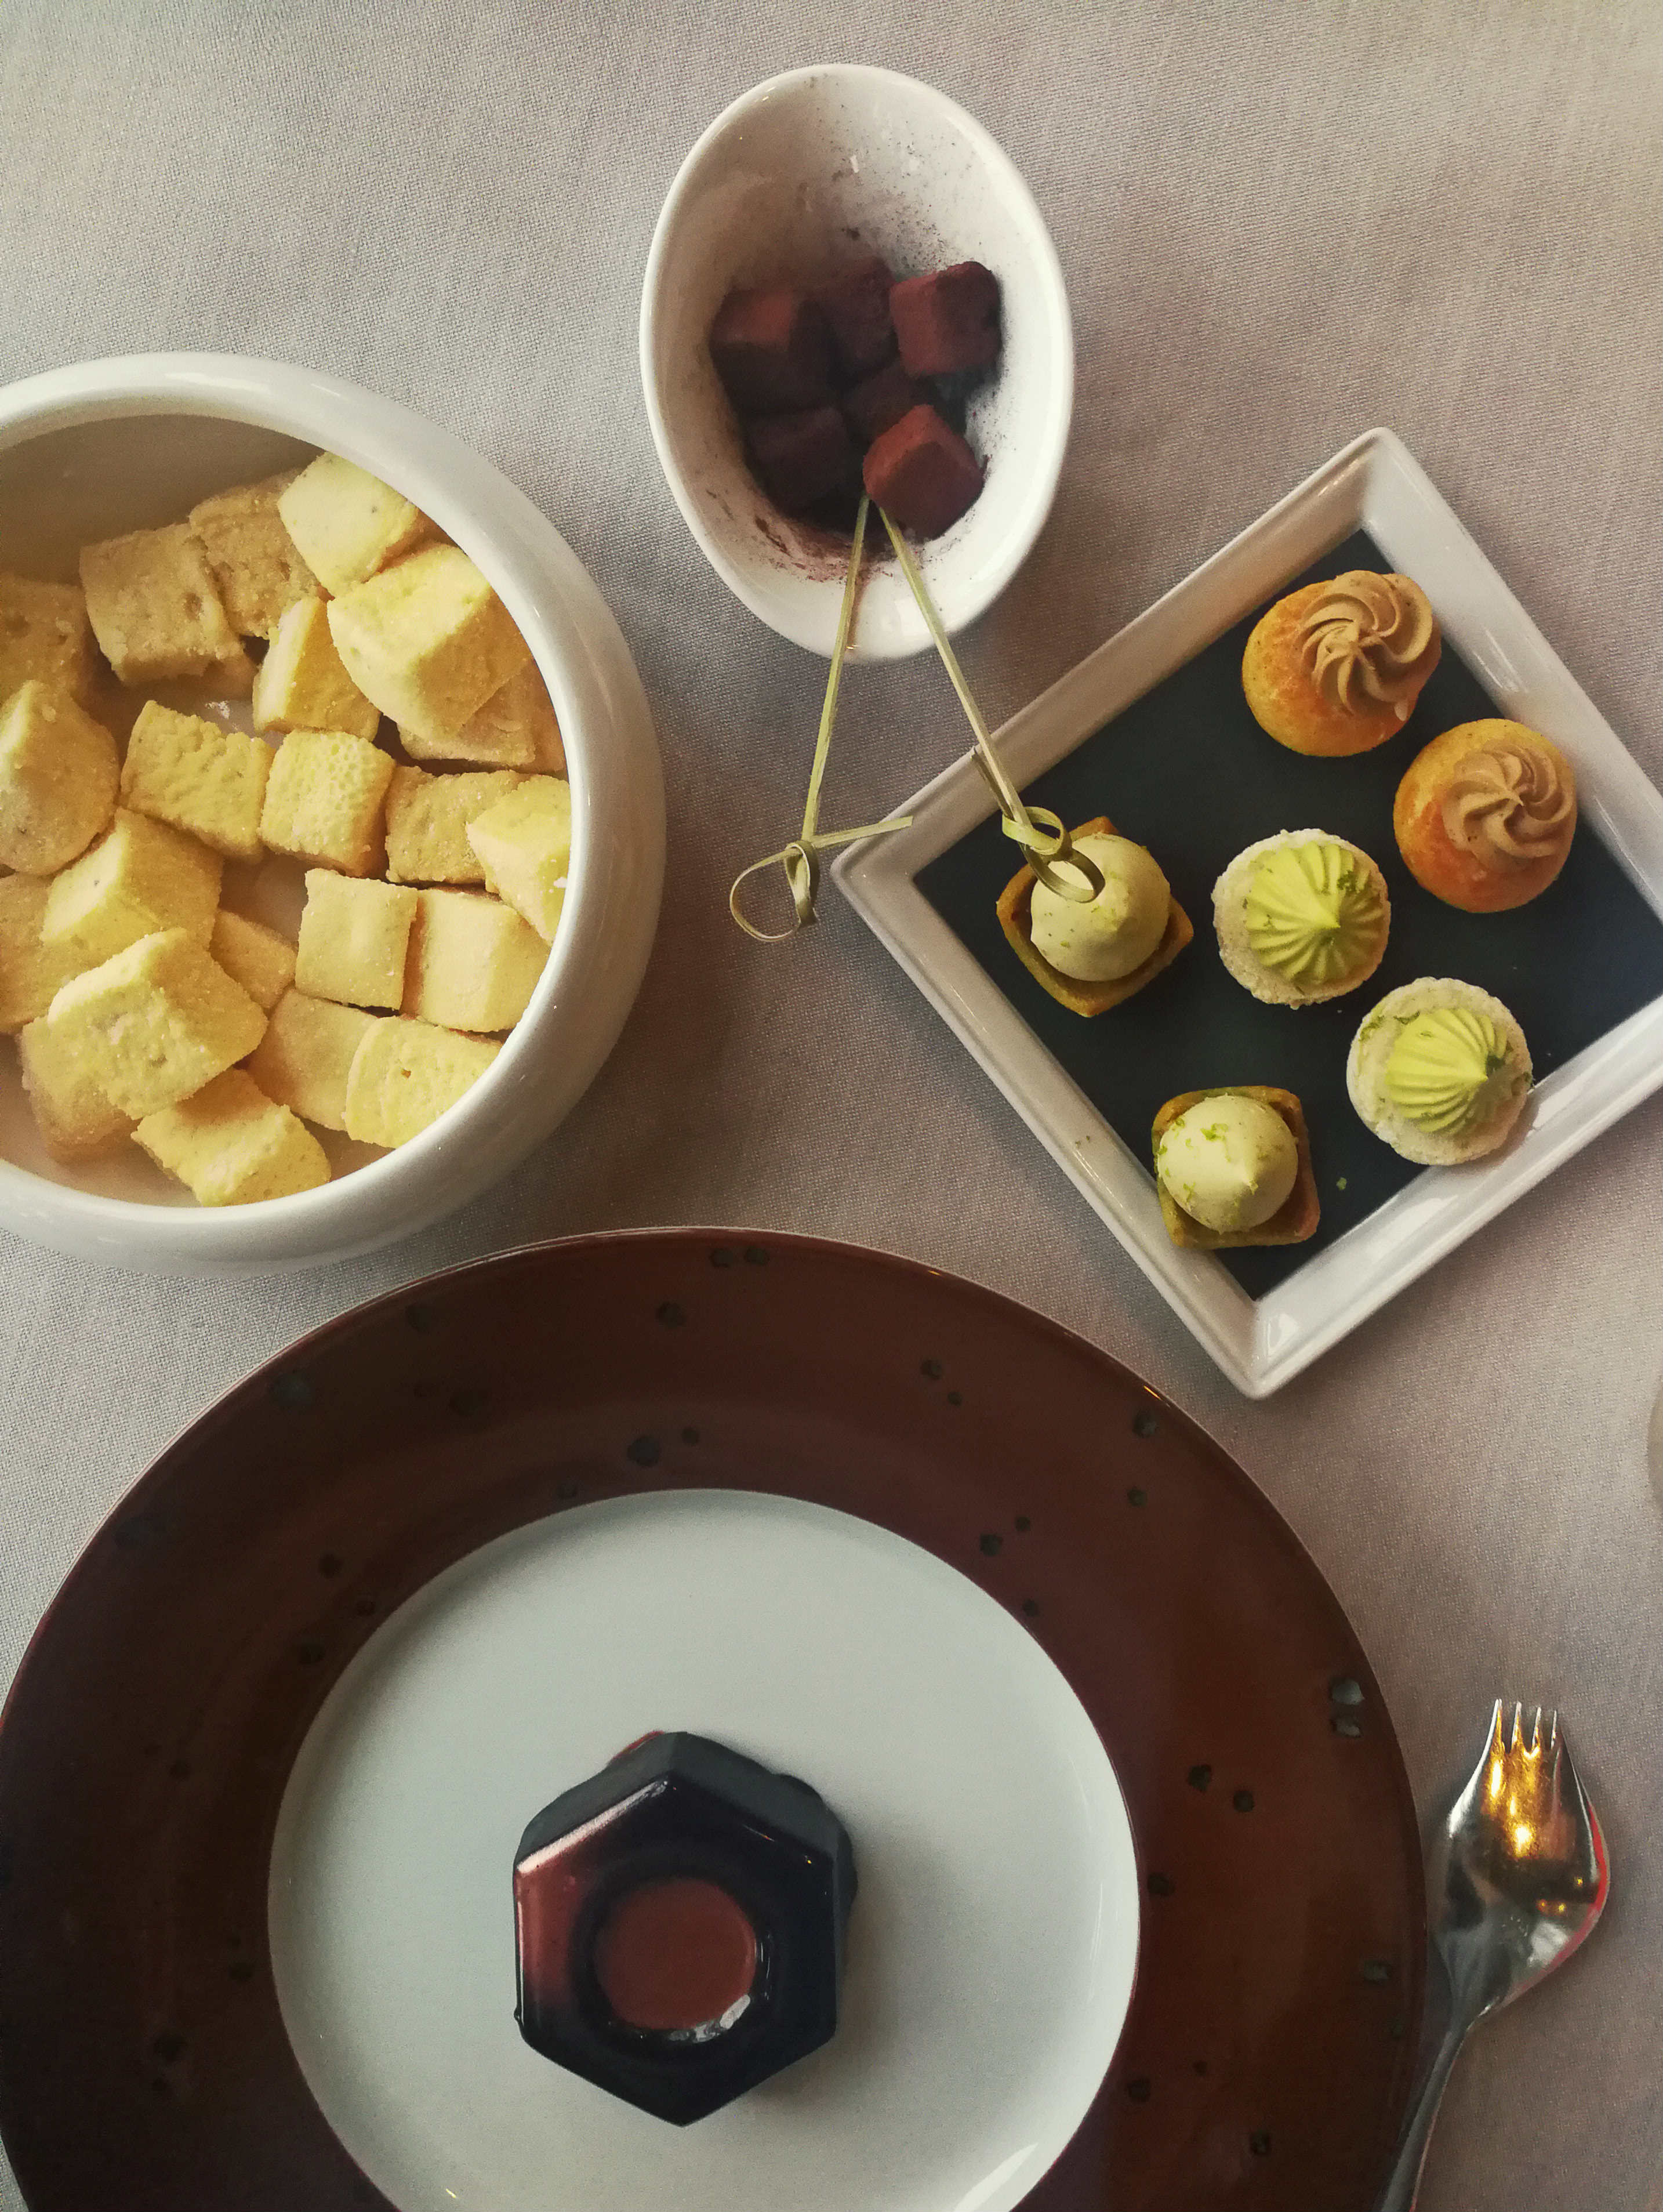 Passiógyümölcs pillecukor, és trópusi gyümölcsös petitsfours, illetve az Alain Ducasse csokoládémanufaktúra desszertje